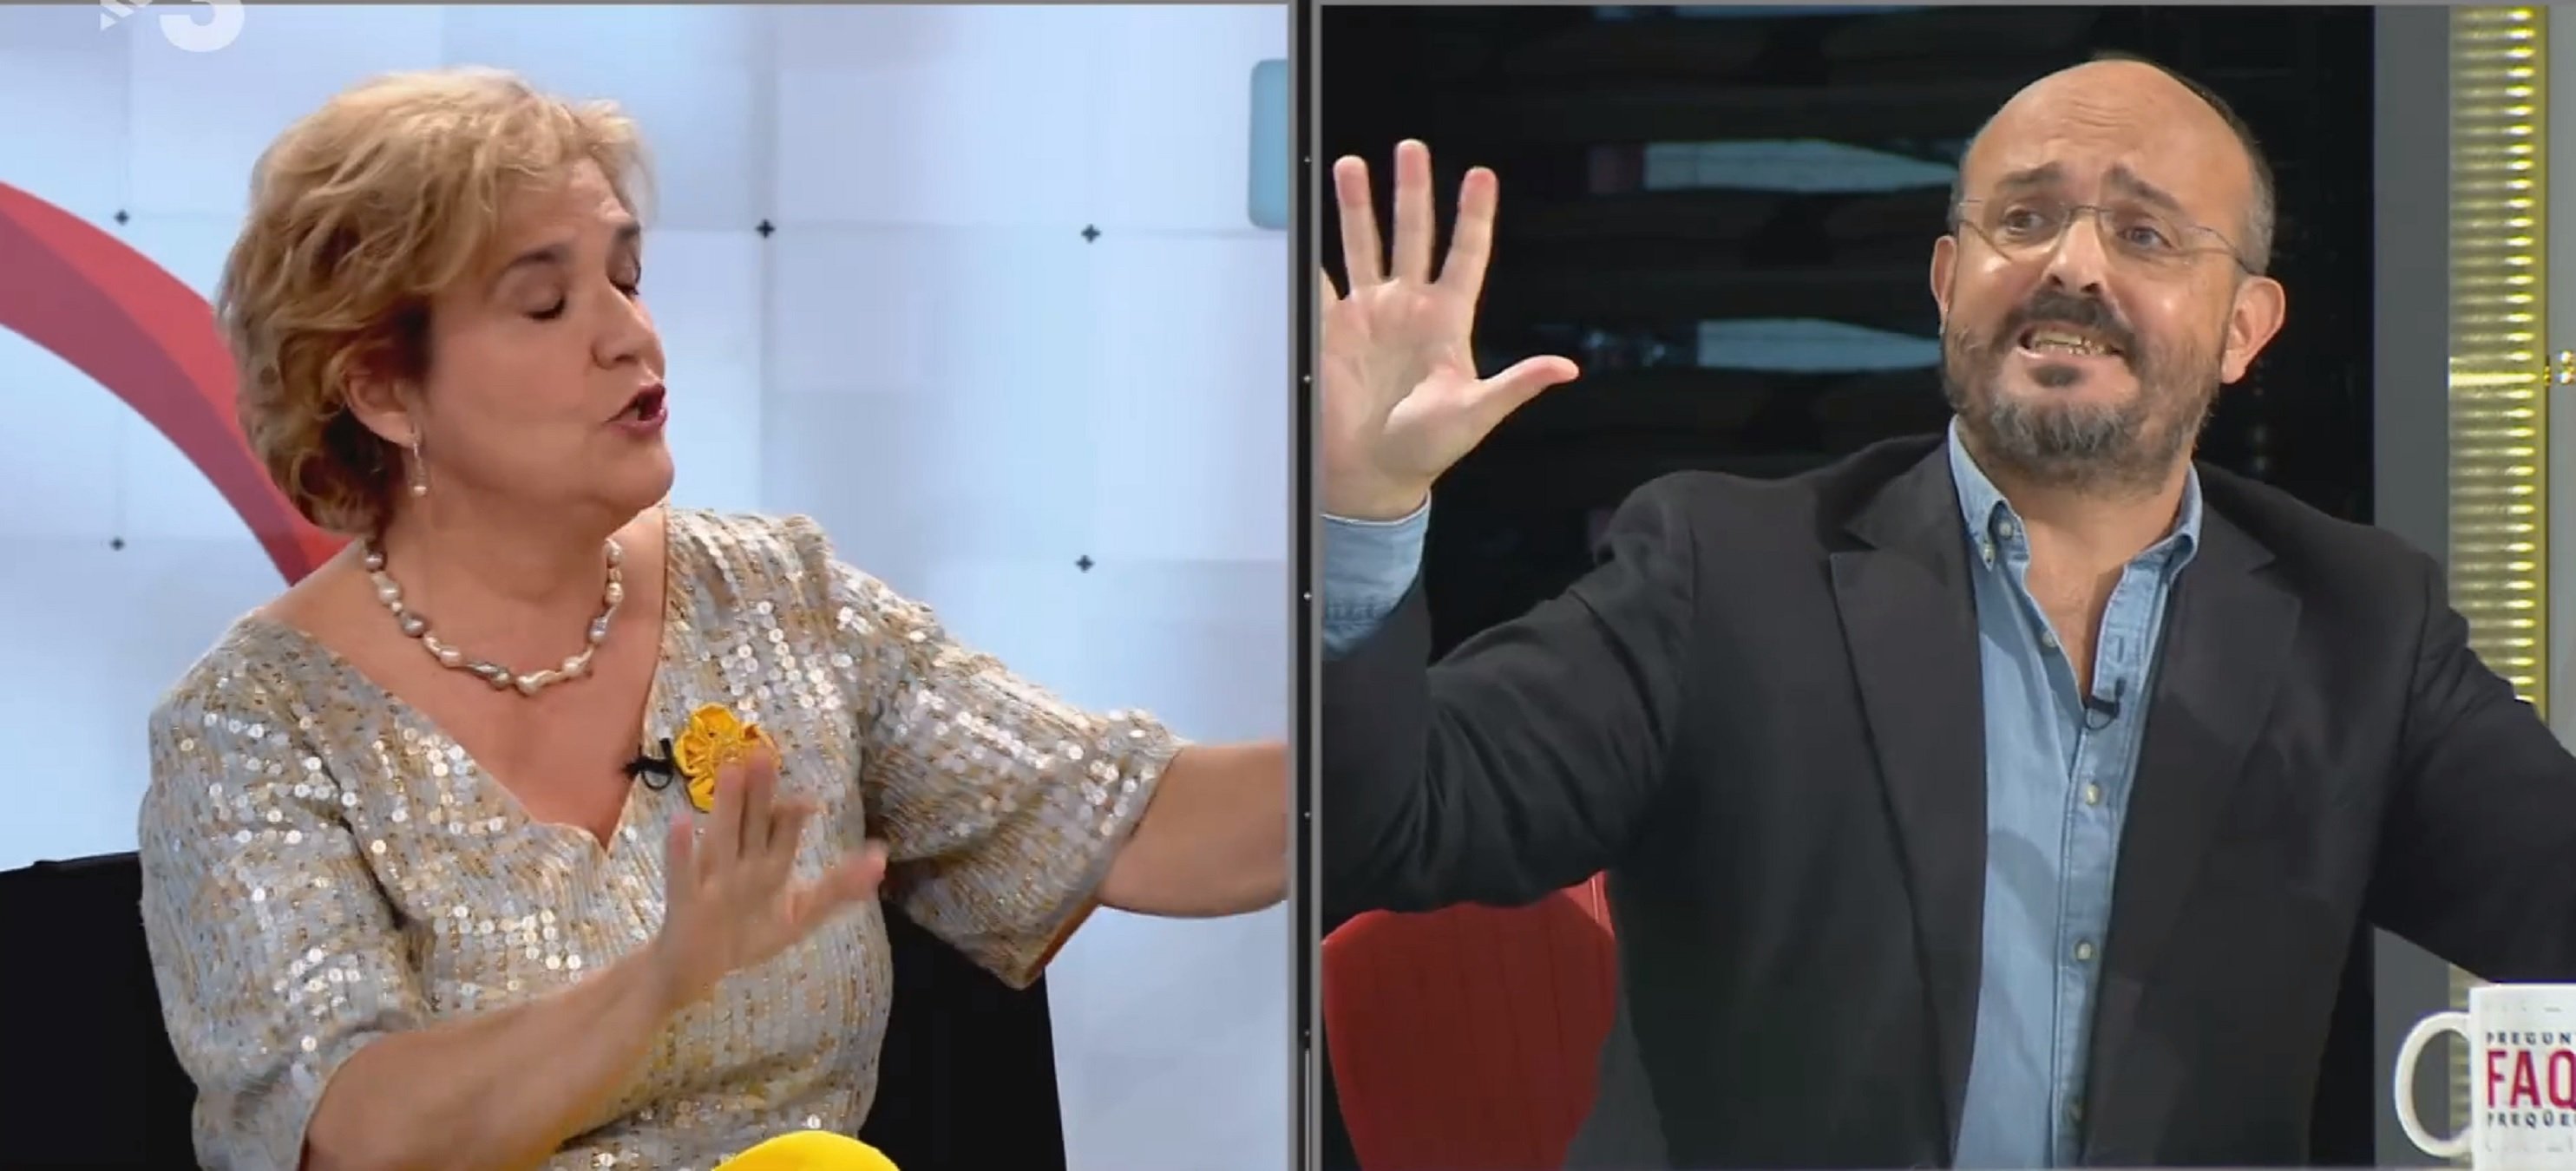 Rahola destrossa Alejandro Fernández del PP que la insulta en directe a TV3